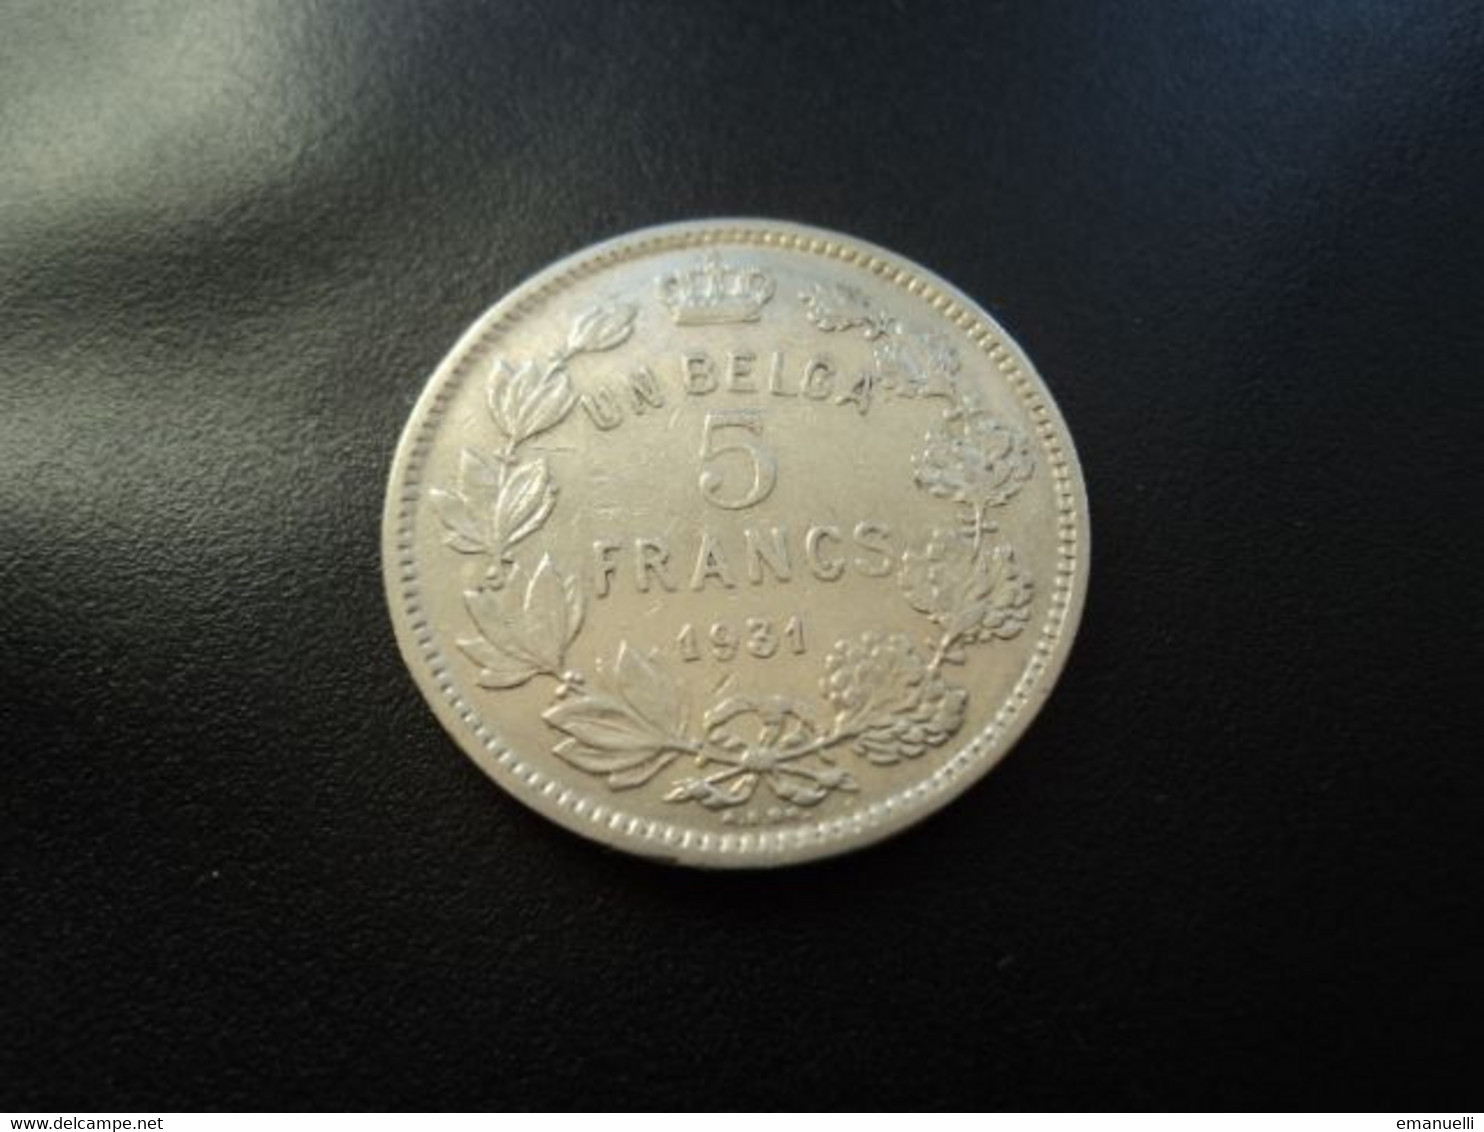 BELGIQUE : UN BELGA - 5 FRANCS  1931  Postion A / Tranche B *  CMB 384a / KM 97.1     SUP - 5 Francs & 1 Belga